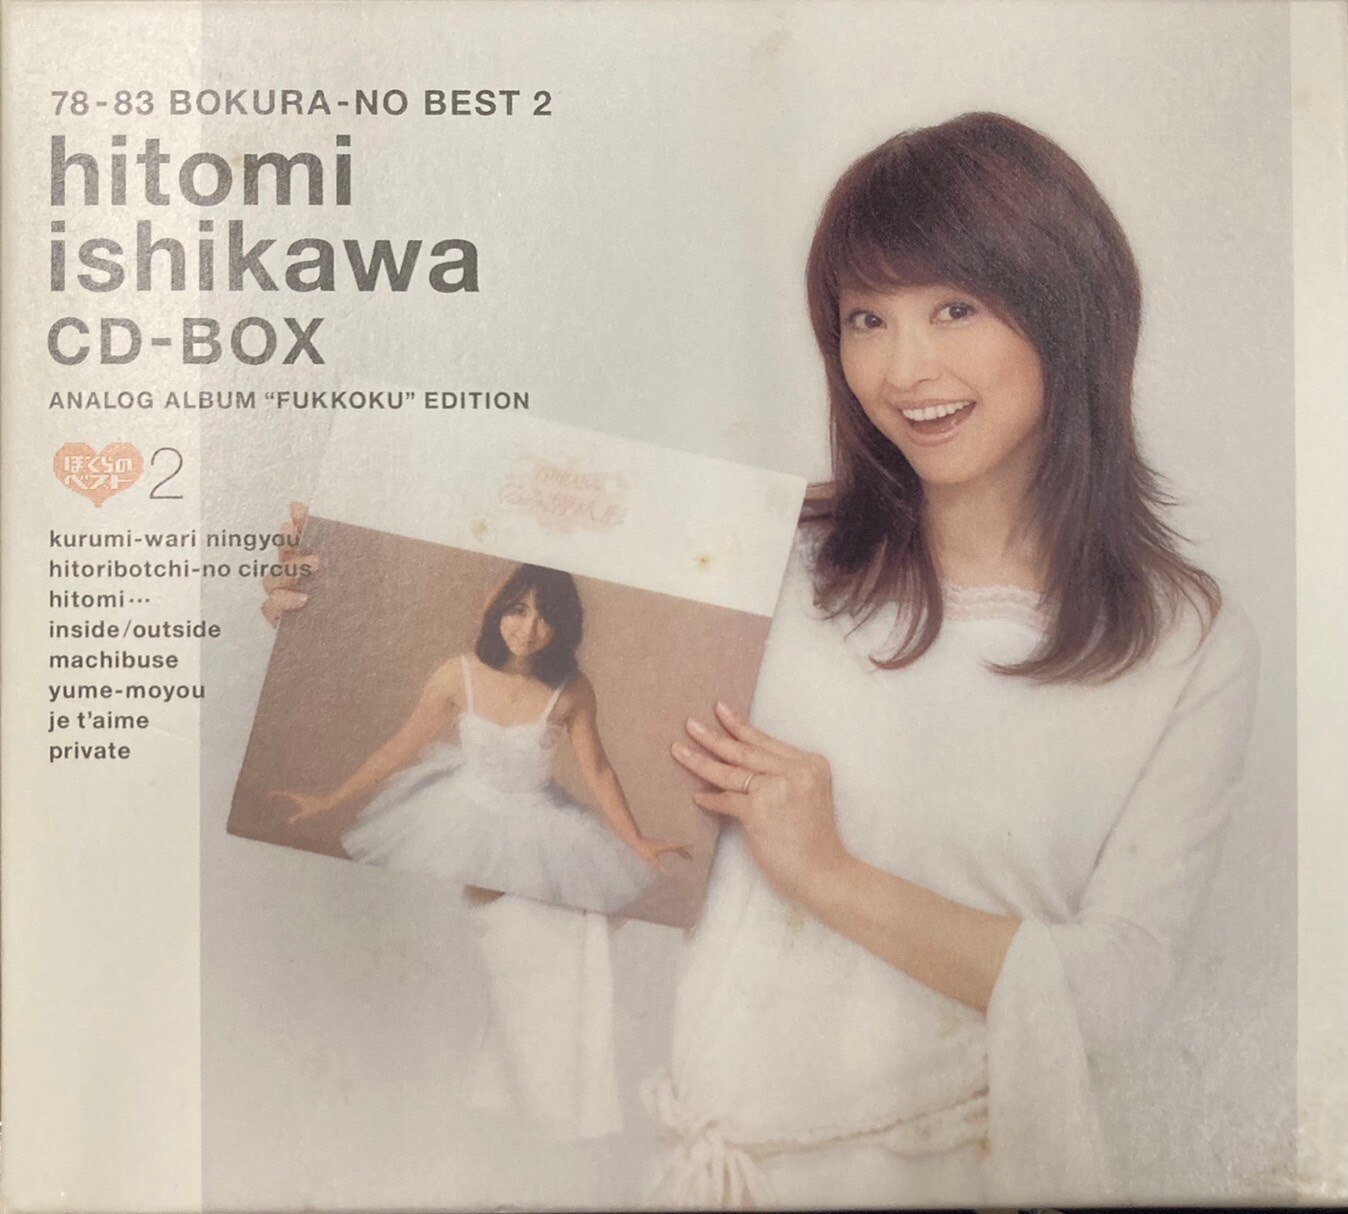 石川ひとみ「78-83 ぼくらのベスト2 CD-BOX」 - 邦楽